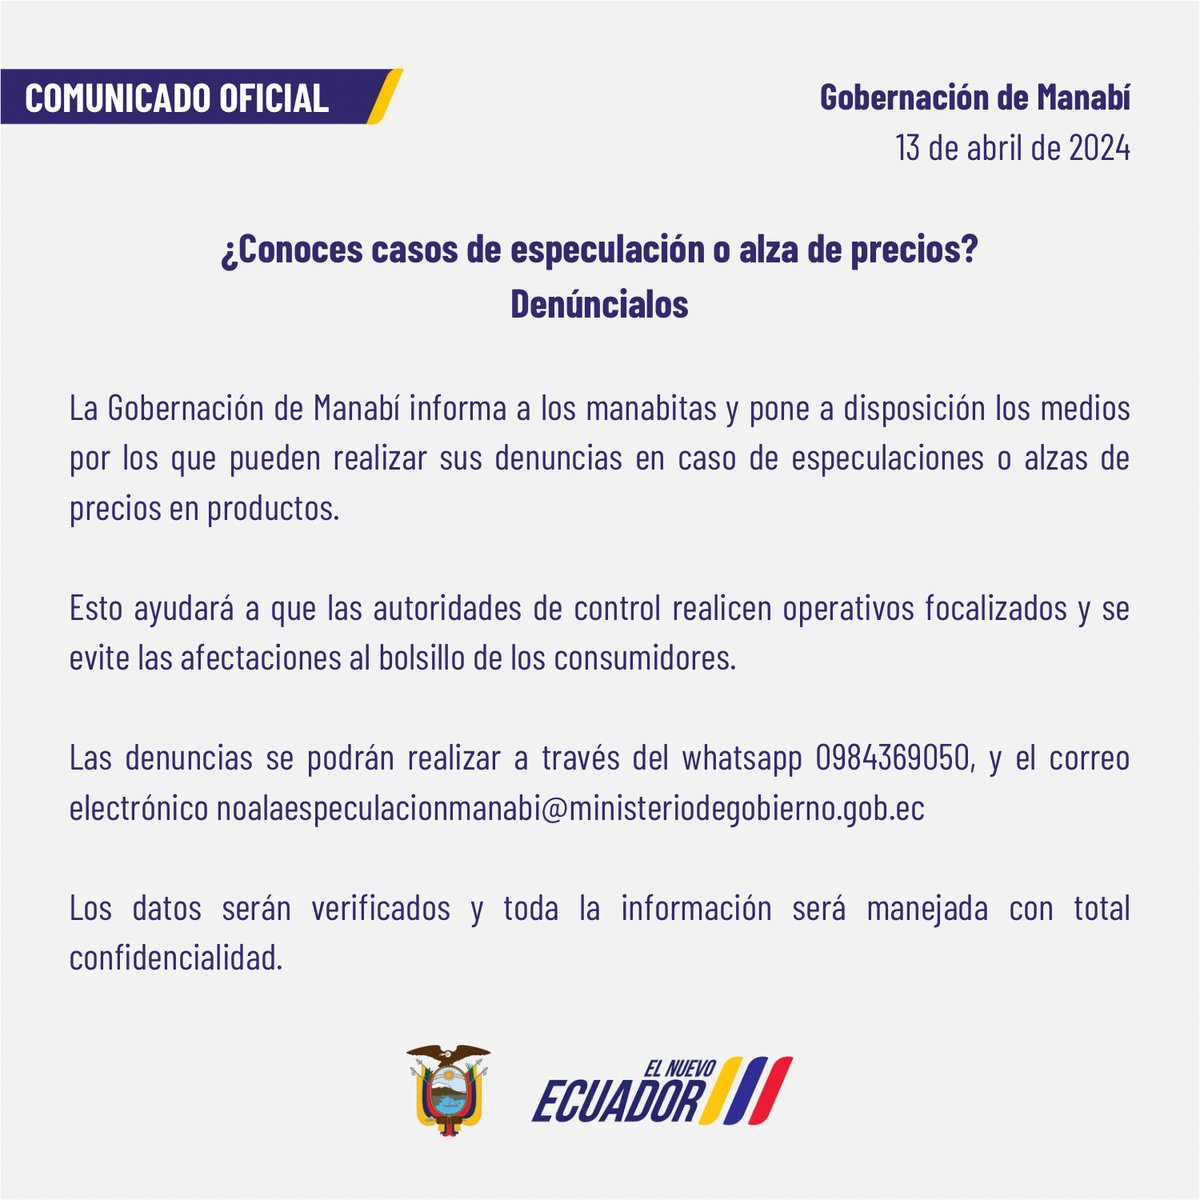 Comunicado oficial 📄

#ElNuevoEcuador